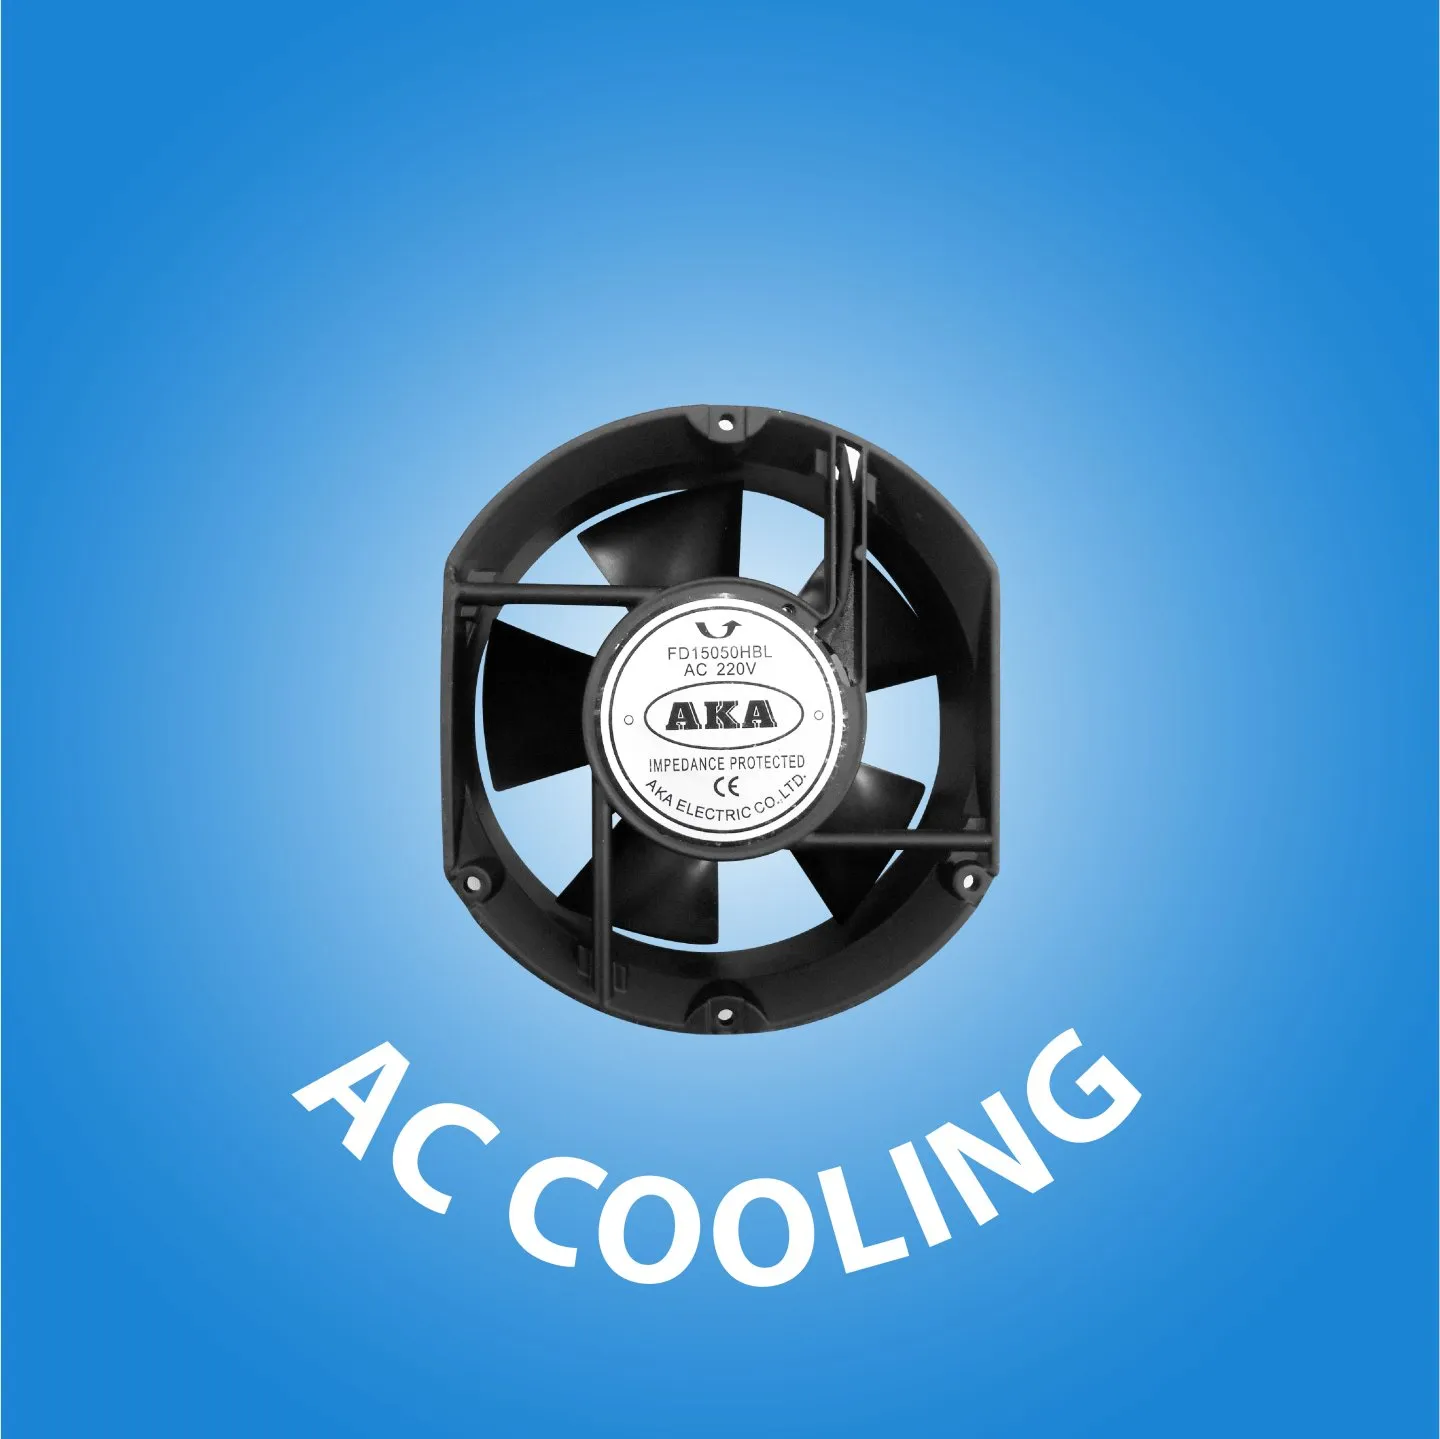  AC Cooling cover kategori website 01